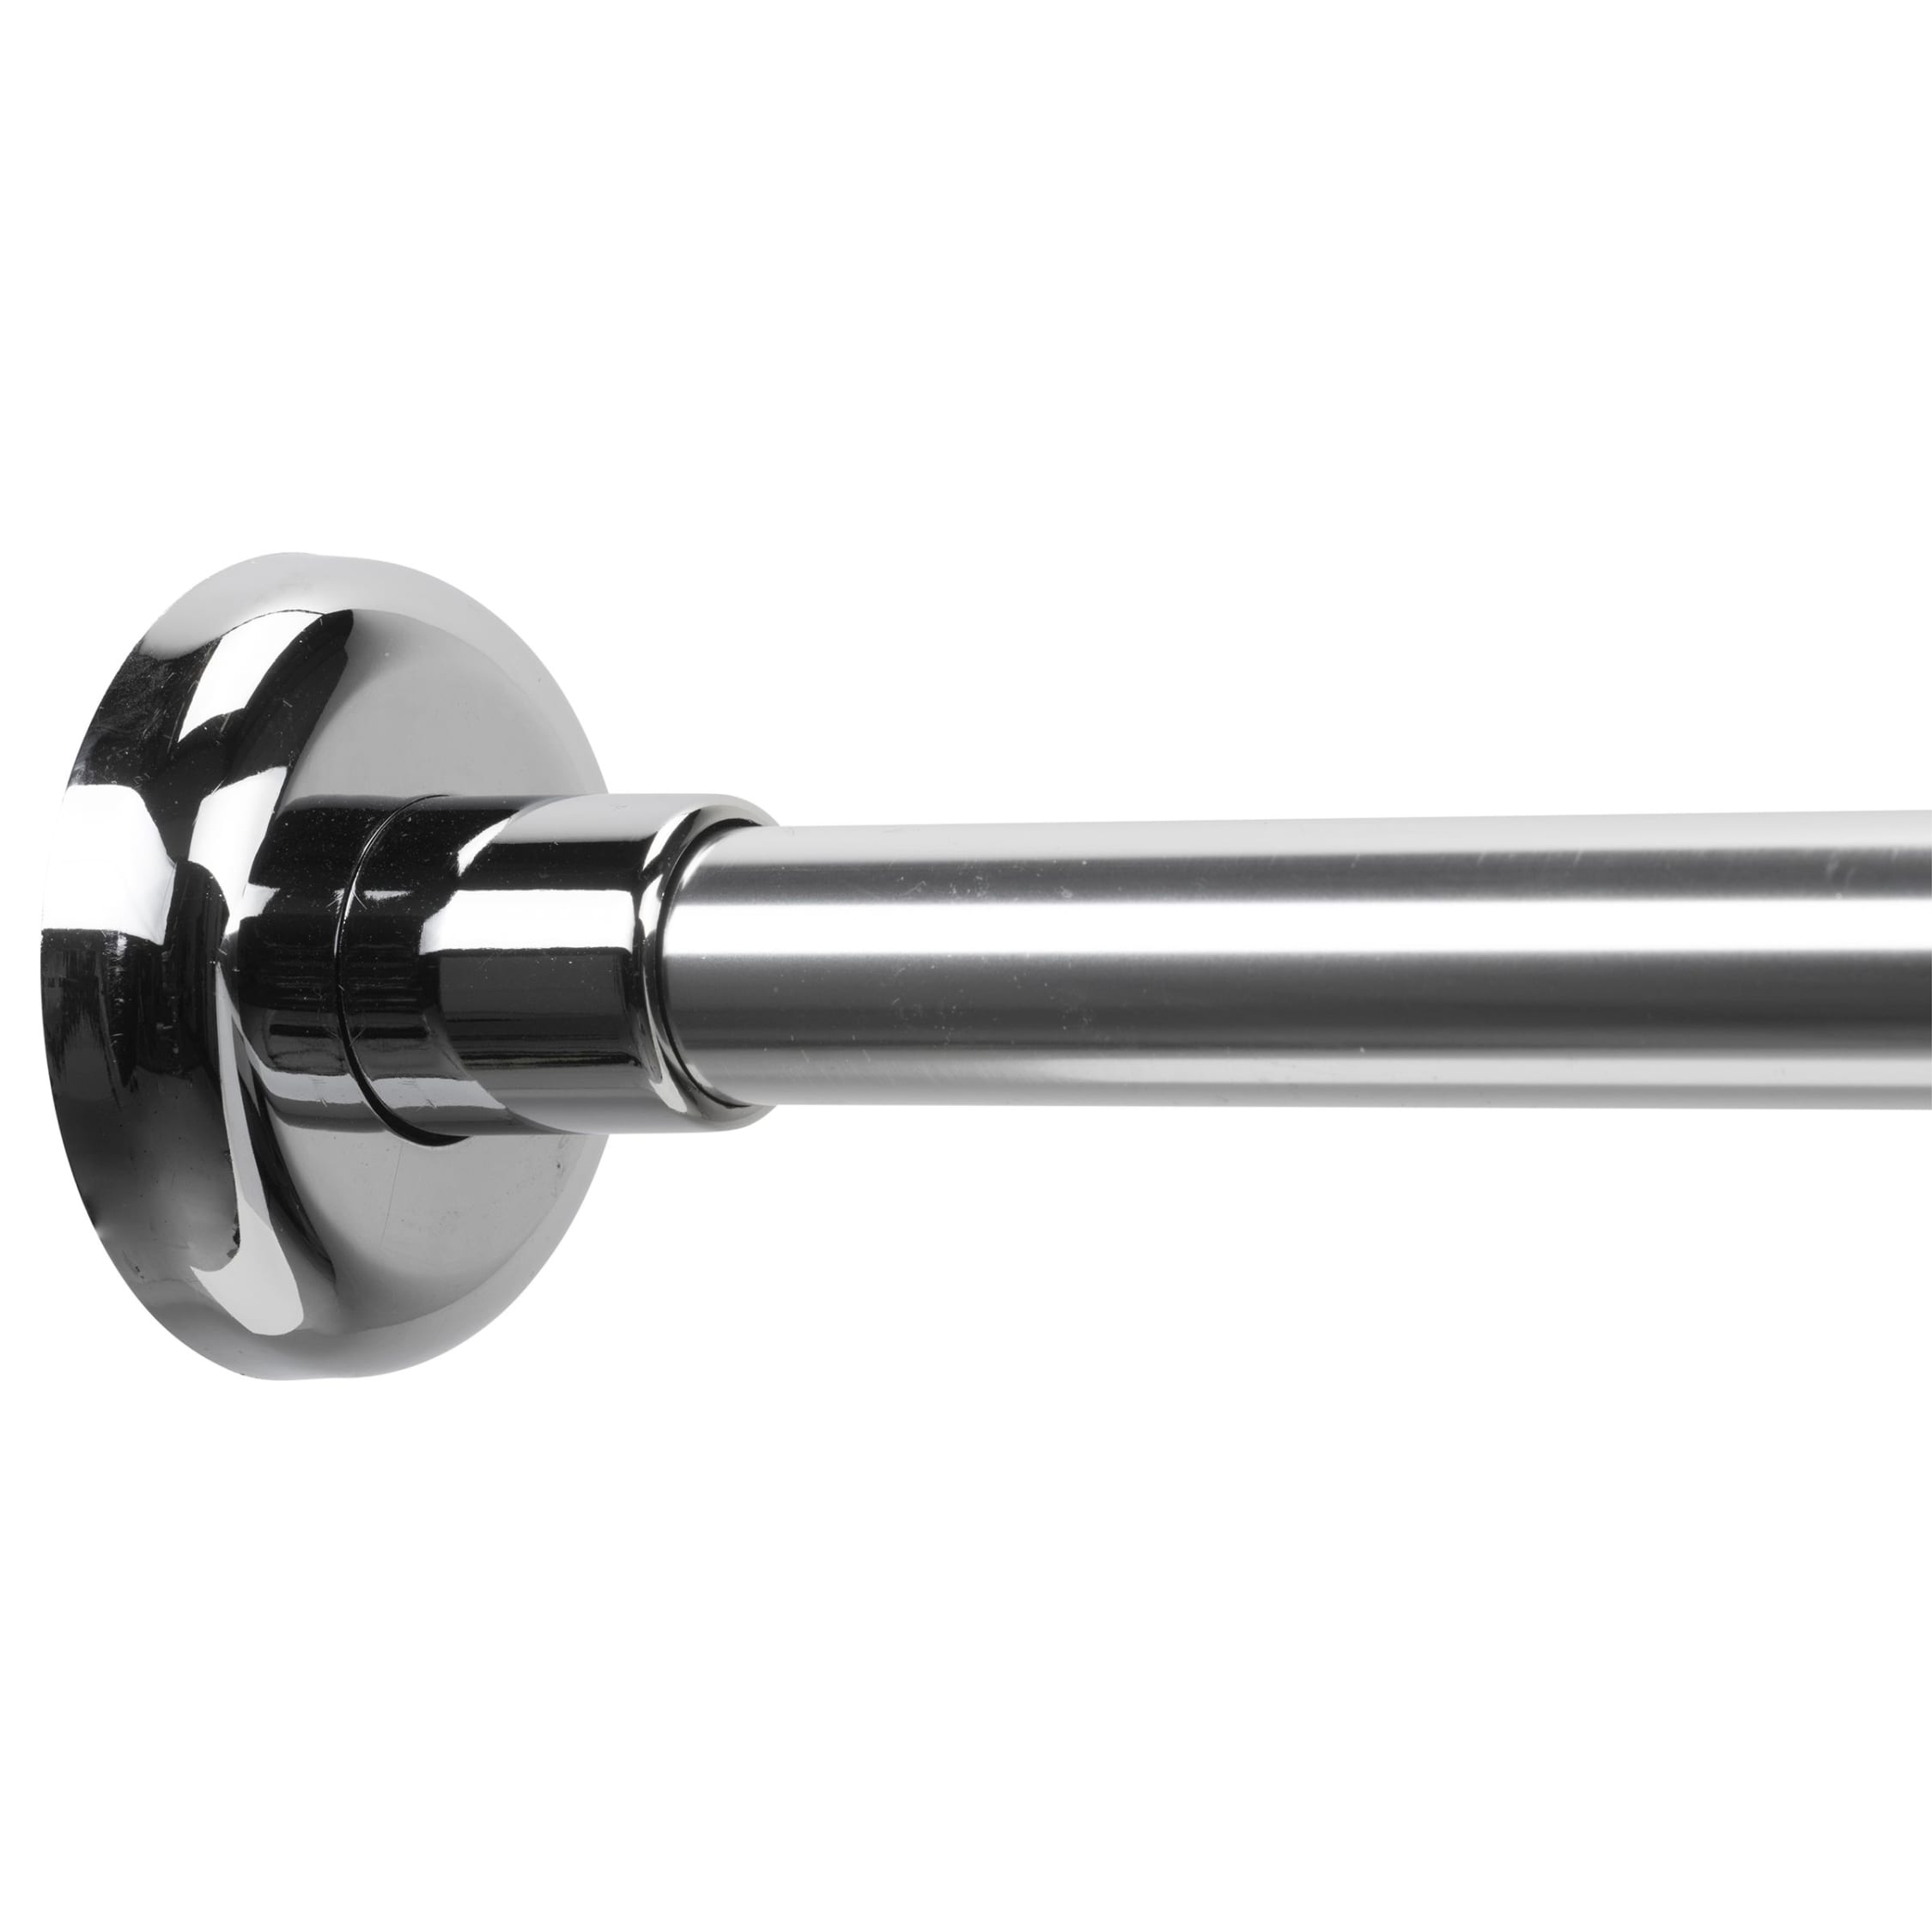 UK Extendable Curved Shower Curtain Rail Chrome 55cm-200cm Telescopic Bath Pole 